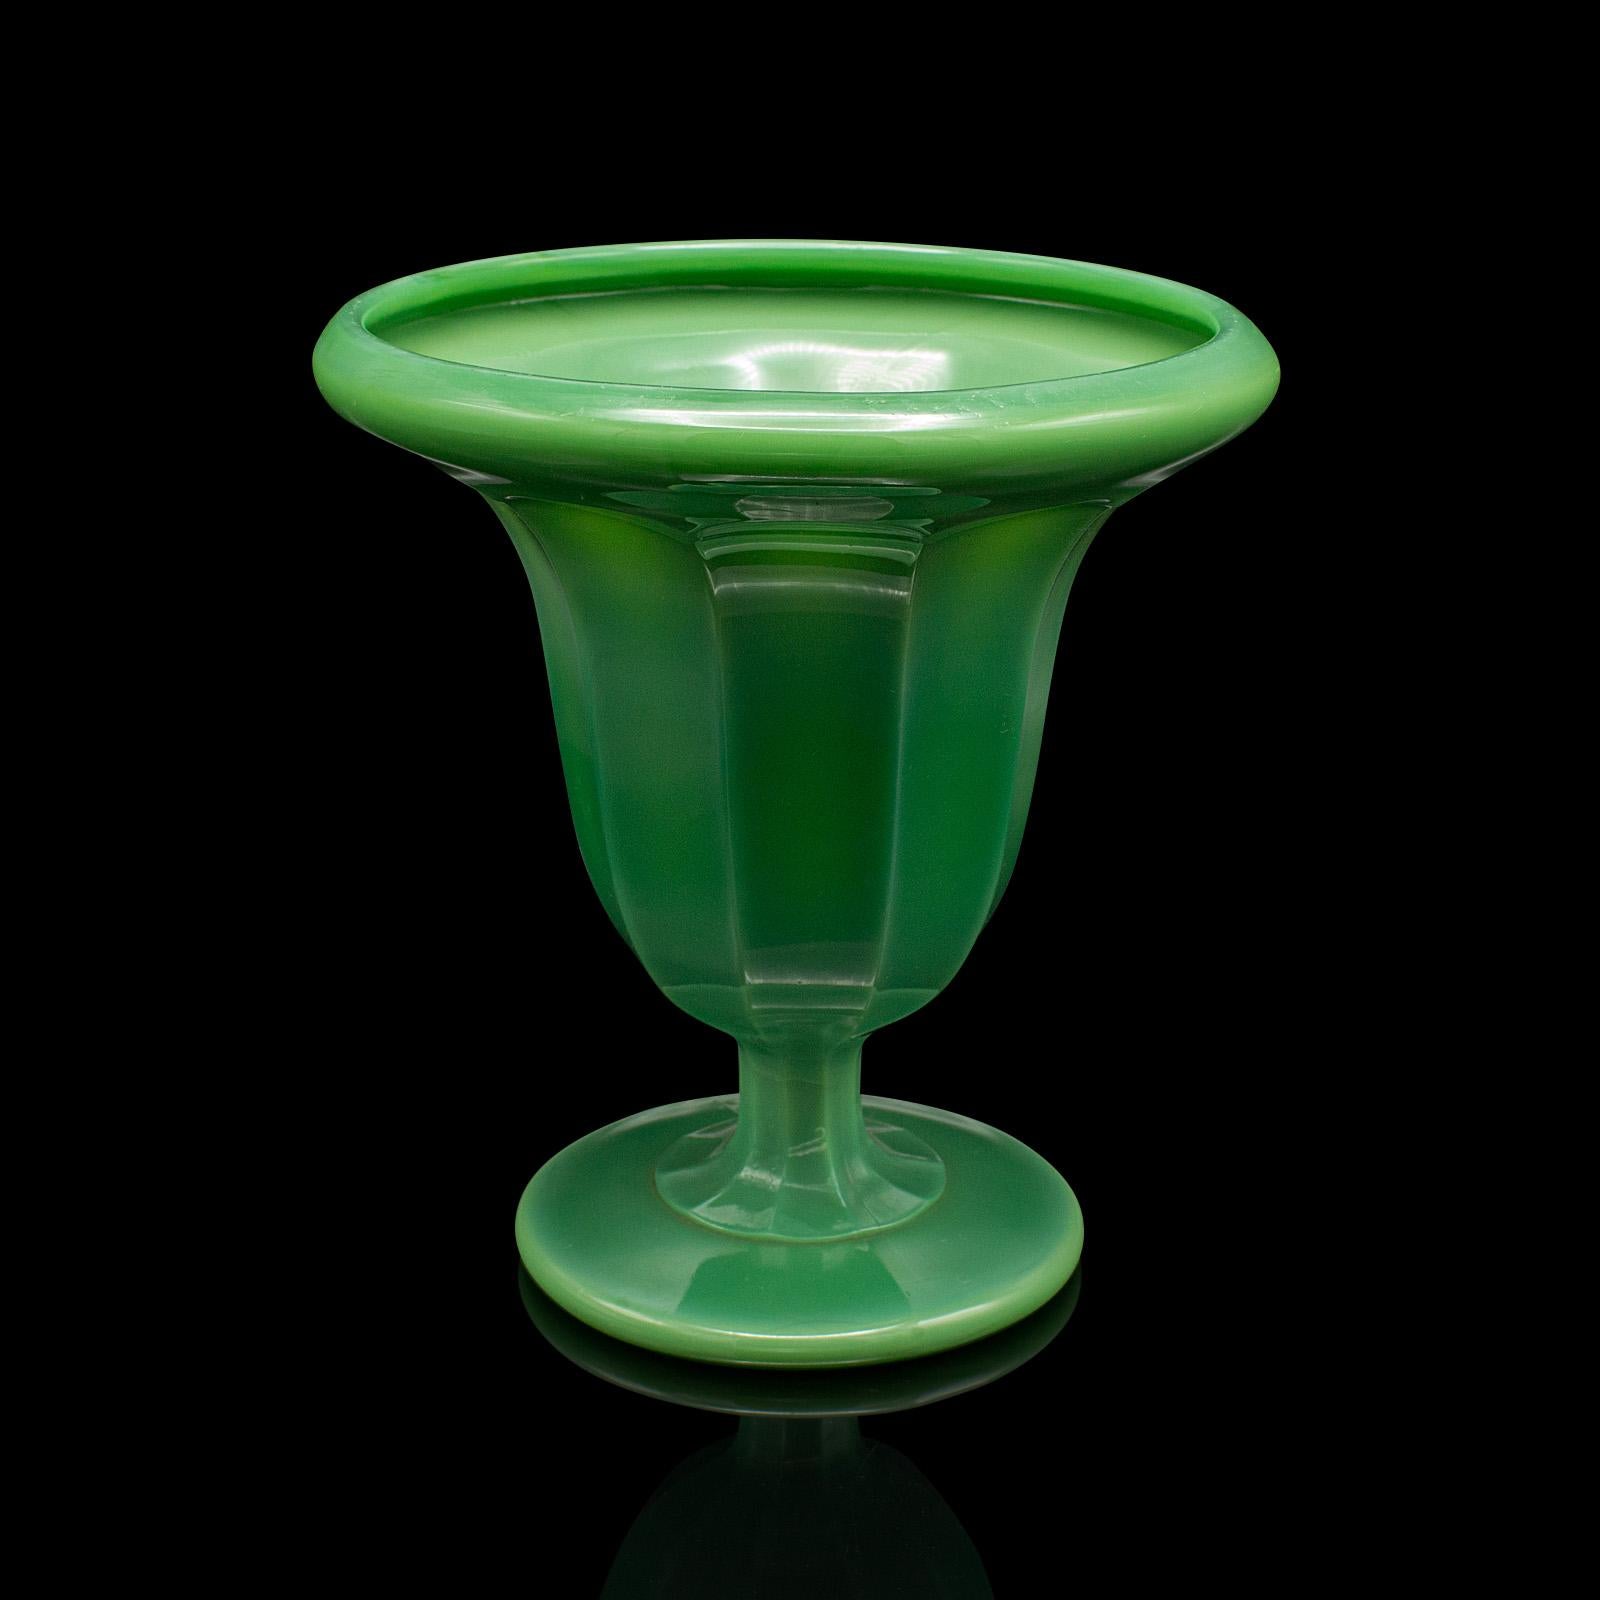 Pair Of Vintage Decorative Vases, English, Glass, Plant Pots, Art Deco, C.1930 For Sale 1